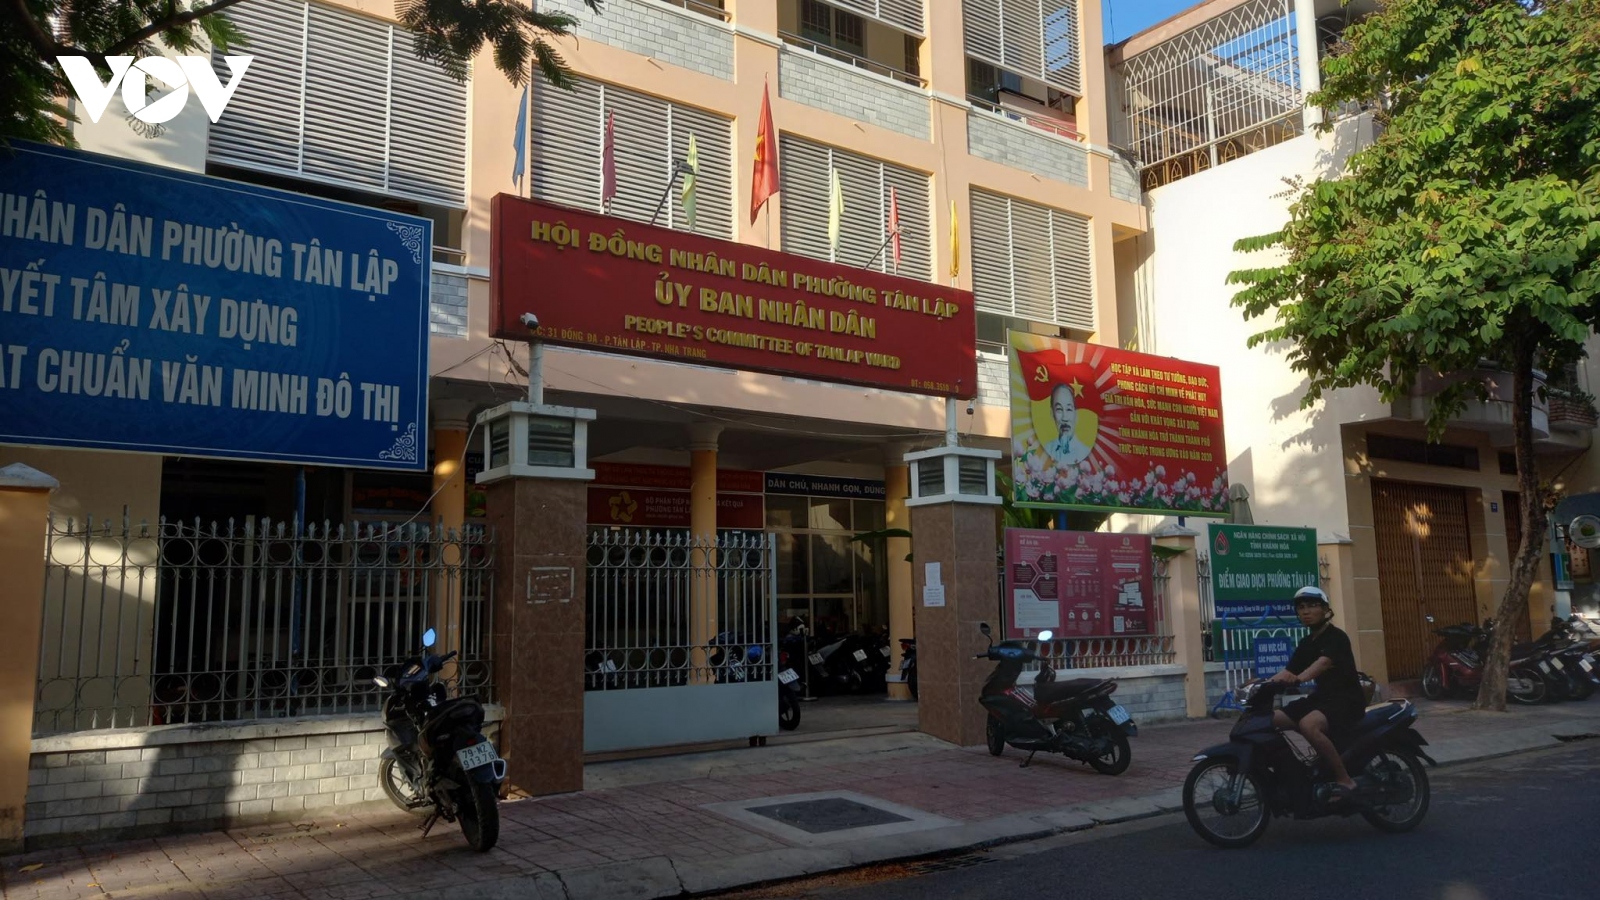 Chủ tịch phường ở Nha Trang bị cách hết chức vụ trong Đảng